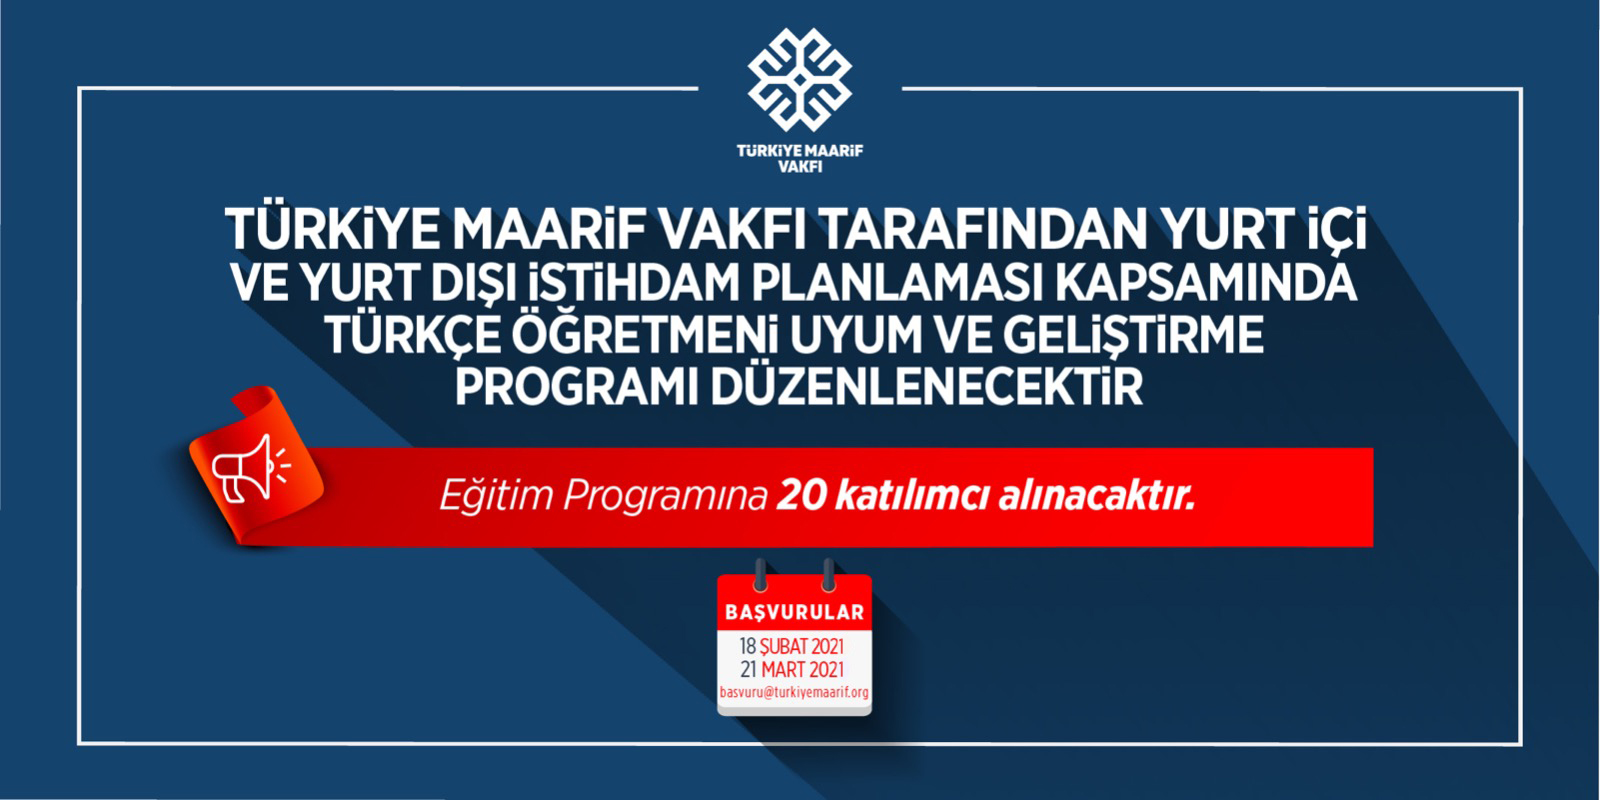 Türkiye Maarif Vakfı İstihdam Planlaması - Türkçe Öğretmeni Uyum ve Geliştirme Programı